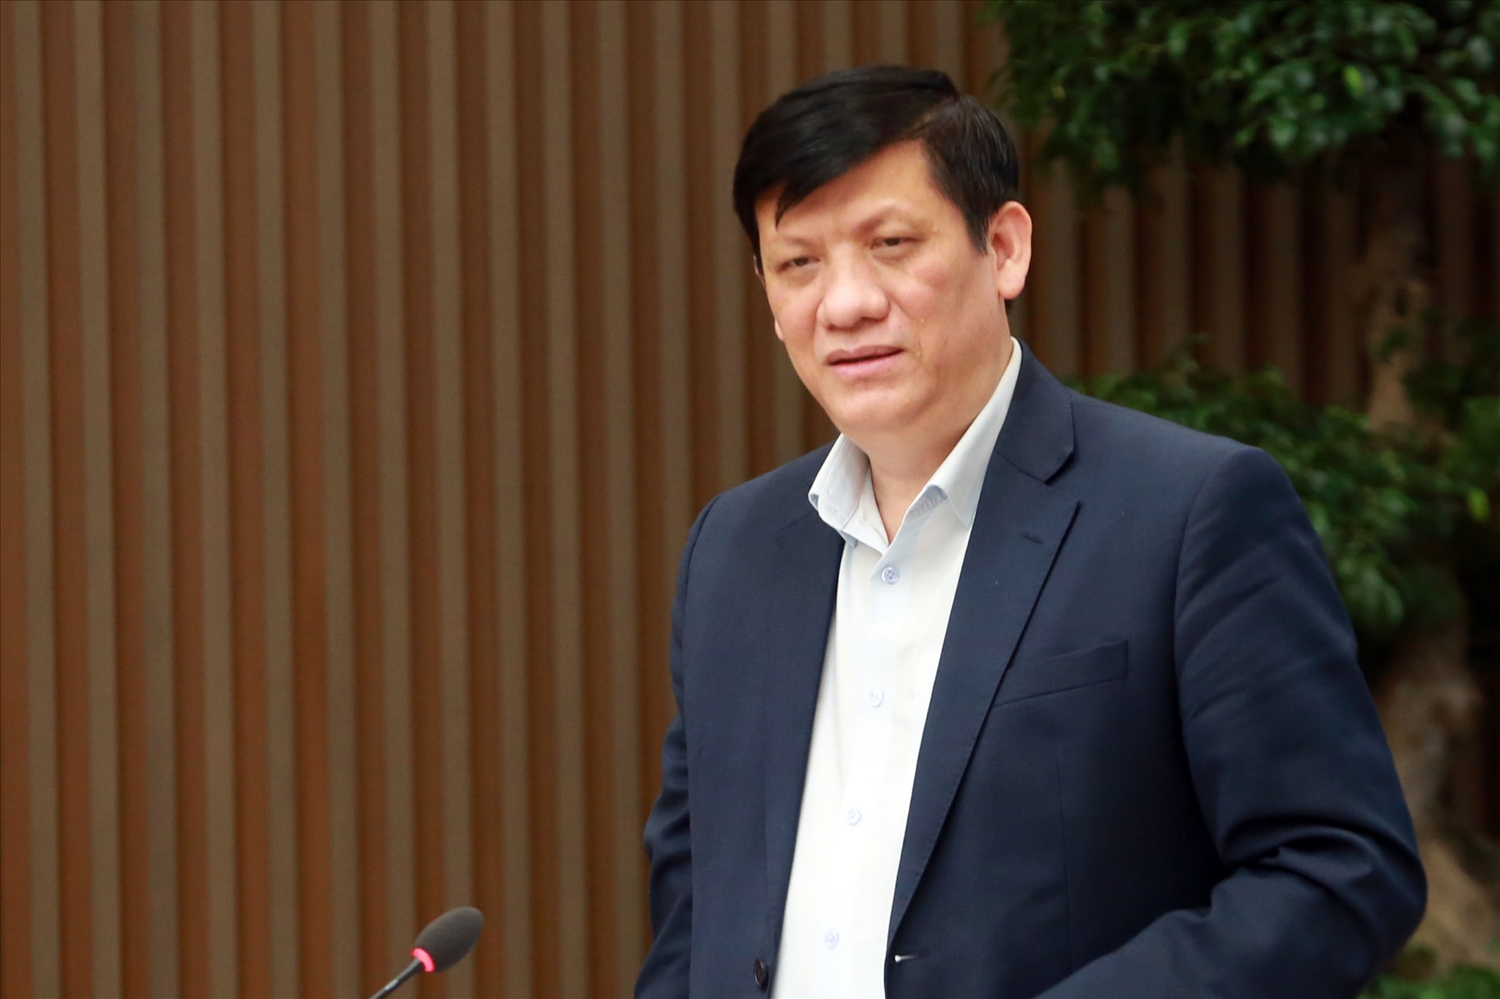 Bộ trưởng Bộ Y tế Nguyễn Thanh Long đề nghị các địa phương rà soát, đánh giá lại tất cả các khâu điều trị bệnh nhân COVID-19 như phân loại, năng lực hồi sức tích cực, oxy y tế, quản lý ca bệnh tại nhà… Ảnh: VGP/Đình Nam